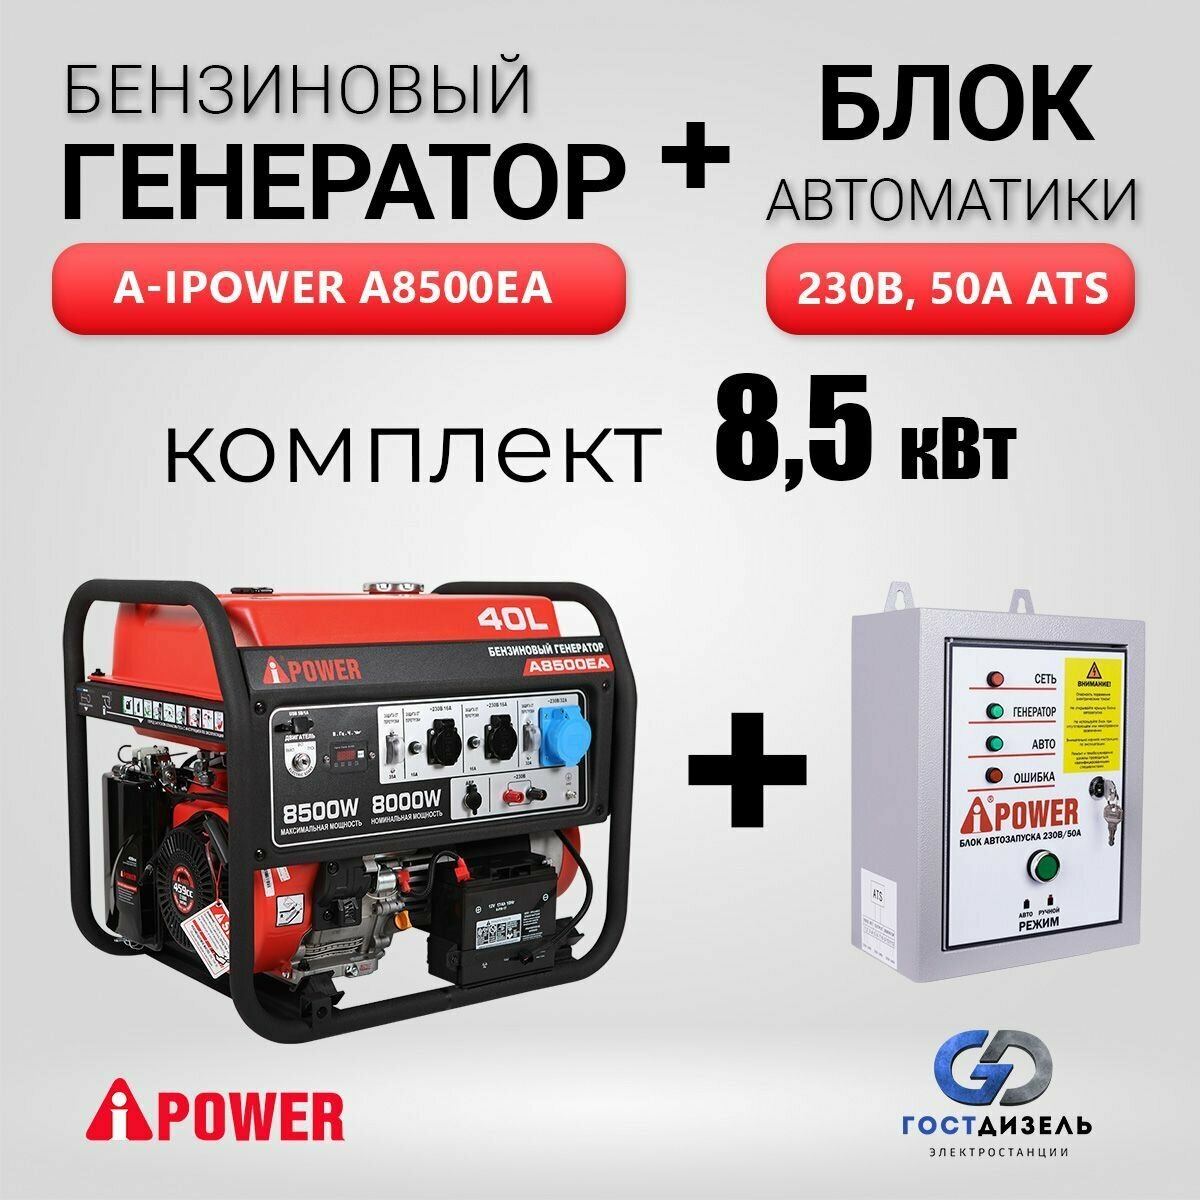 Комплект Бензиновый генератор A-iPower A8500EA (8,5 кВт) с электростартером + АВР 230